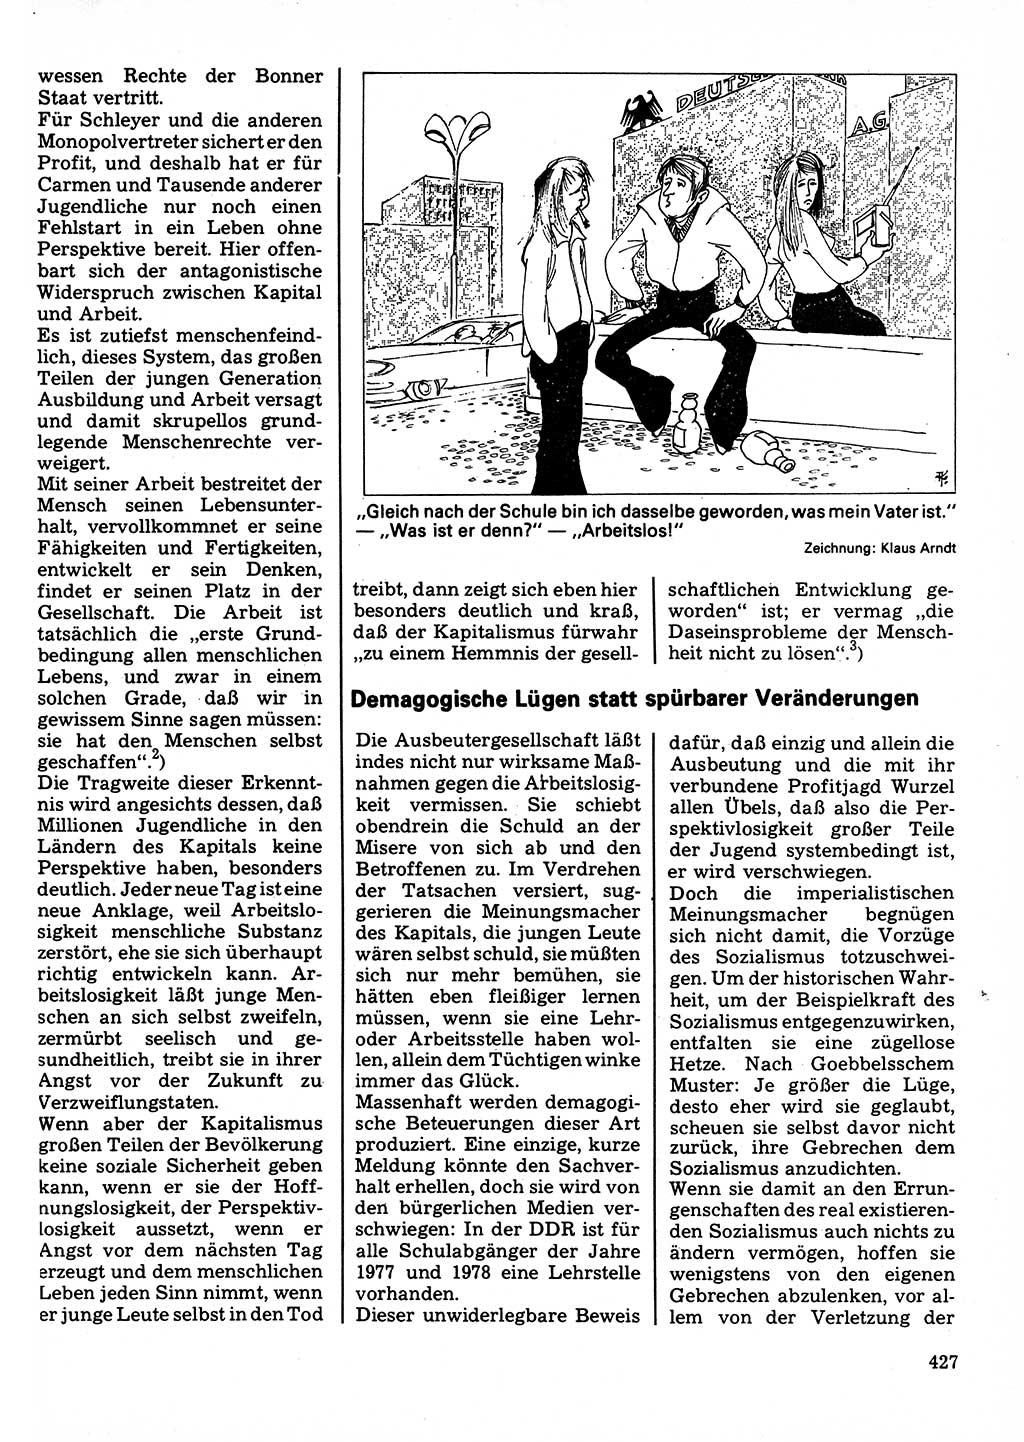 Neuer Weg (NW), Organ des Zentralkomitees (ZK) der SED (Sozialistische Einheitspartei Deutschlands) für Fragen des Parteilebens, 32. Jahrgang [Deutsche Demokratische Republik (DDR)] 1977, Seite 427 (NW ZK SED DDR 1977, S. 427)